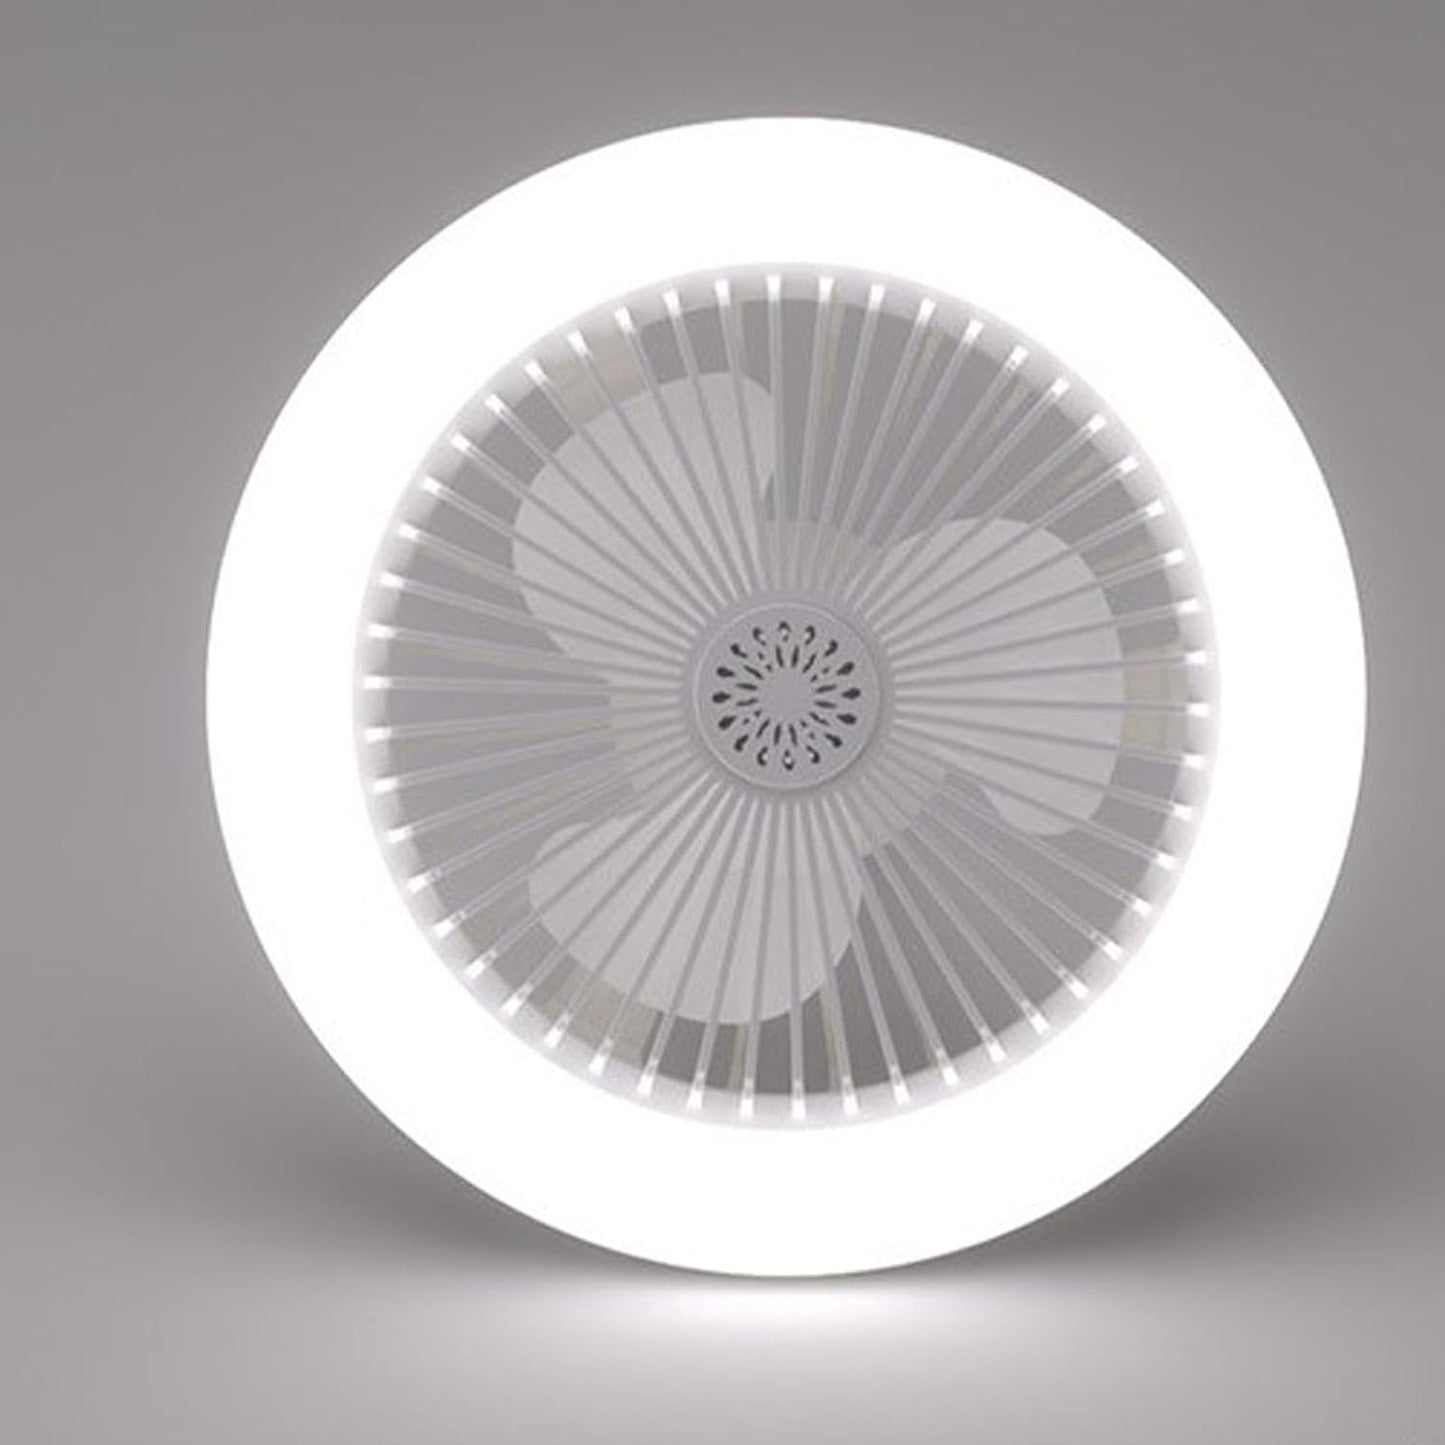 LED Fan Light (2 in 1)